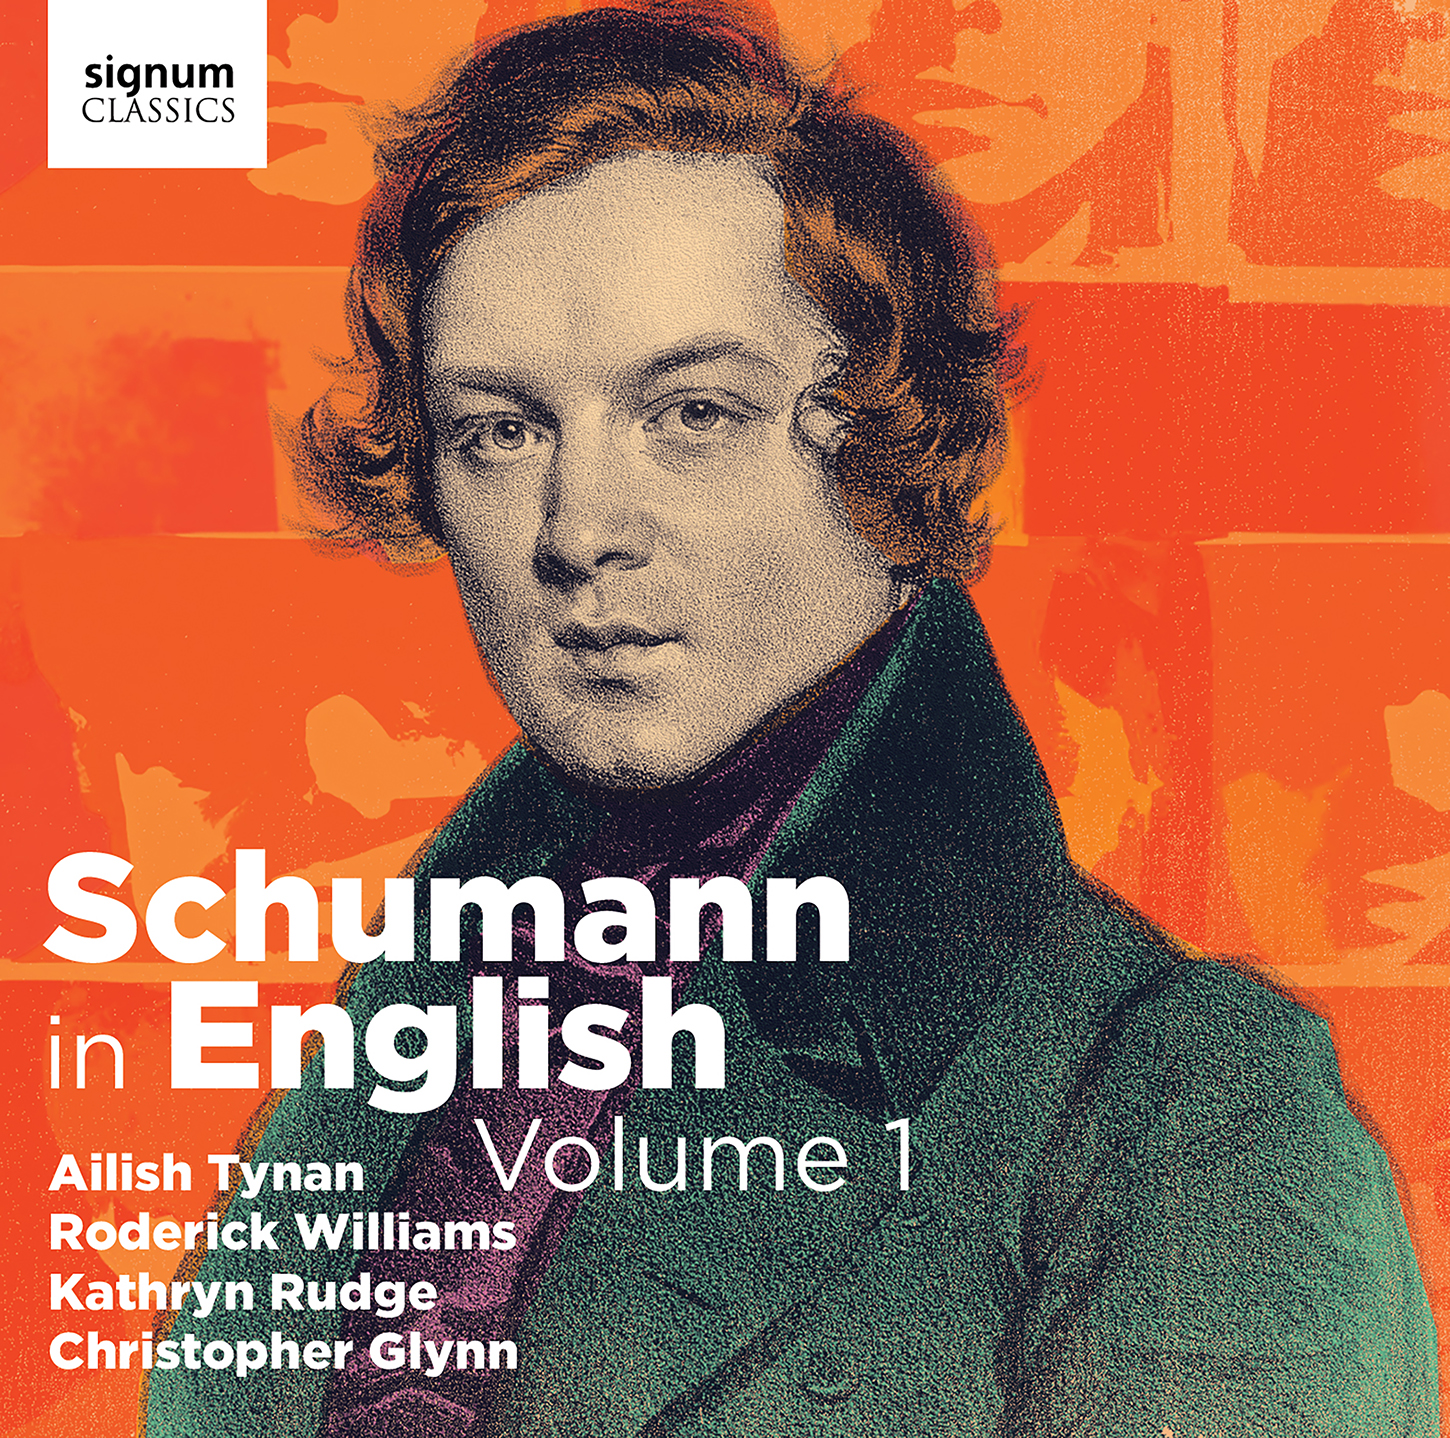 Schumann in English Vol.1 Tynan/Williams/Rudge/Glynn